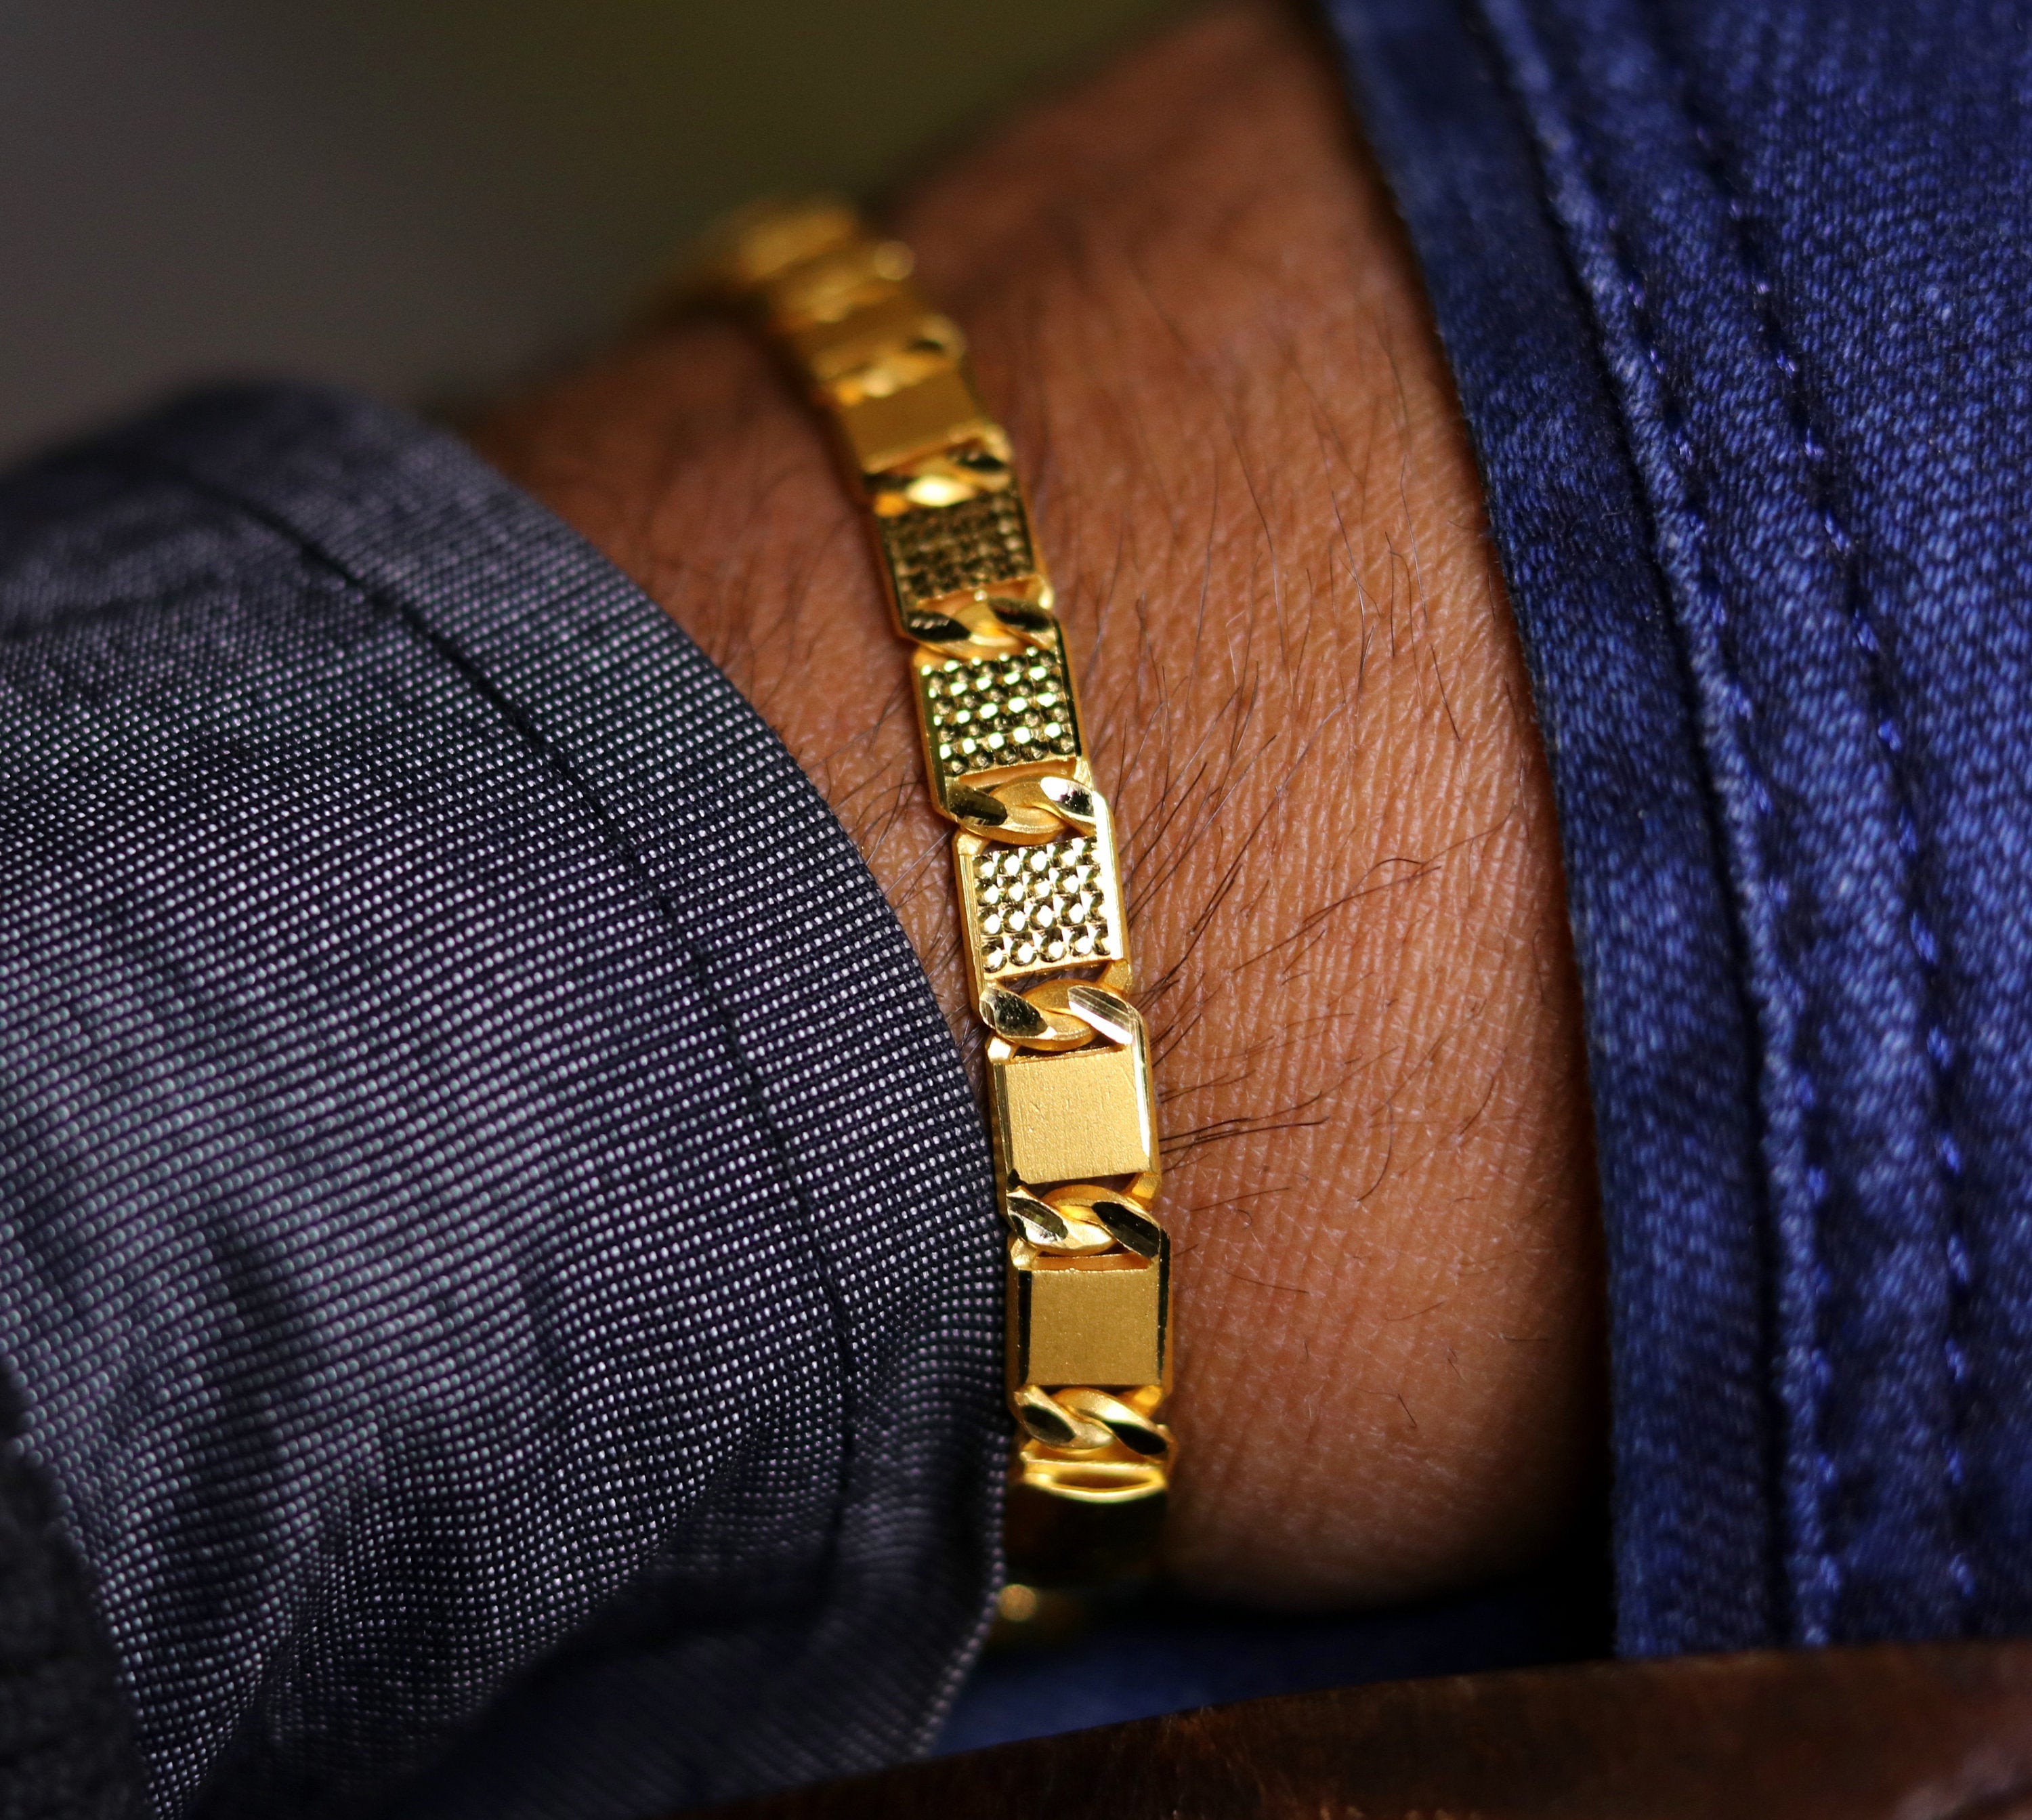 Men's Bracelet, Cuff Bracelet Men, Gold Bangle Bracelet, Bangle Bracelet  Men, Gift for Him, Made in Greece, by Christina Christi Jewels. - Etsy |  Mens bracelet gold jewelry, Mens gold bracelets, Man